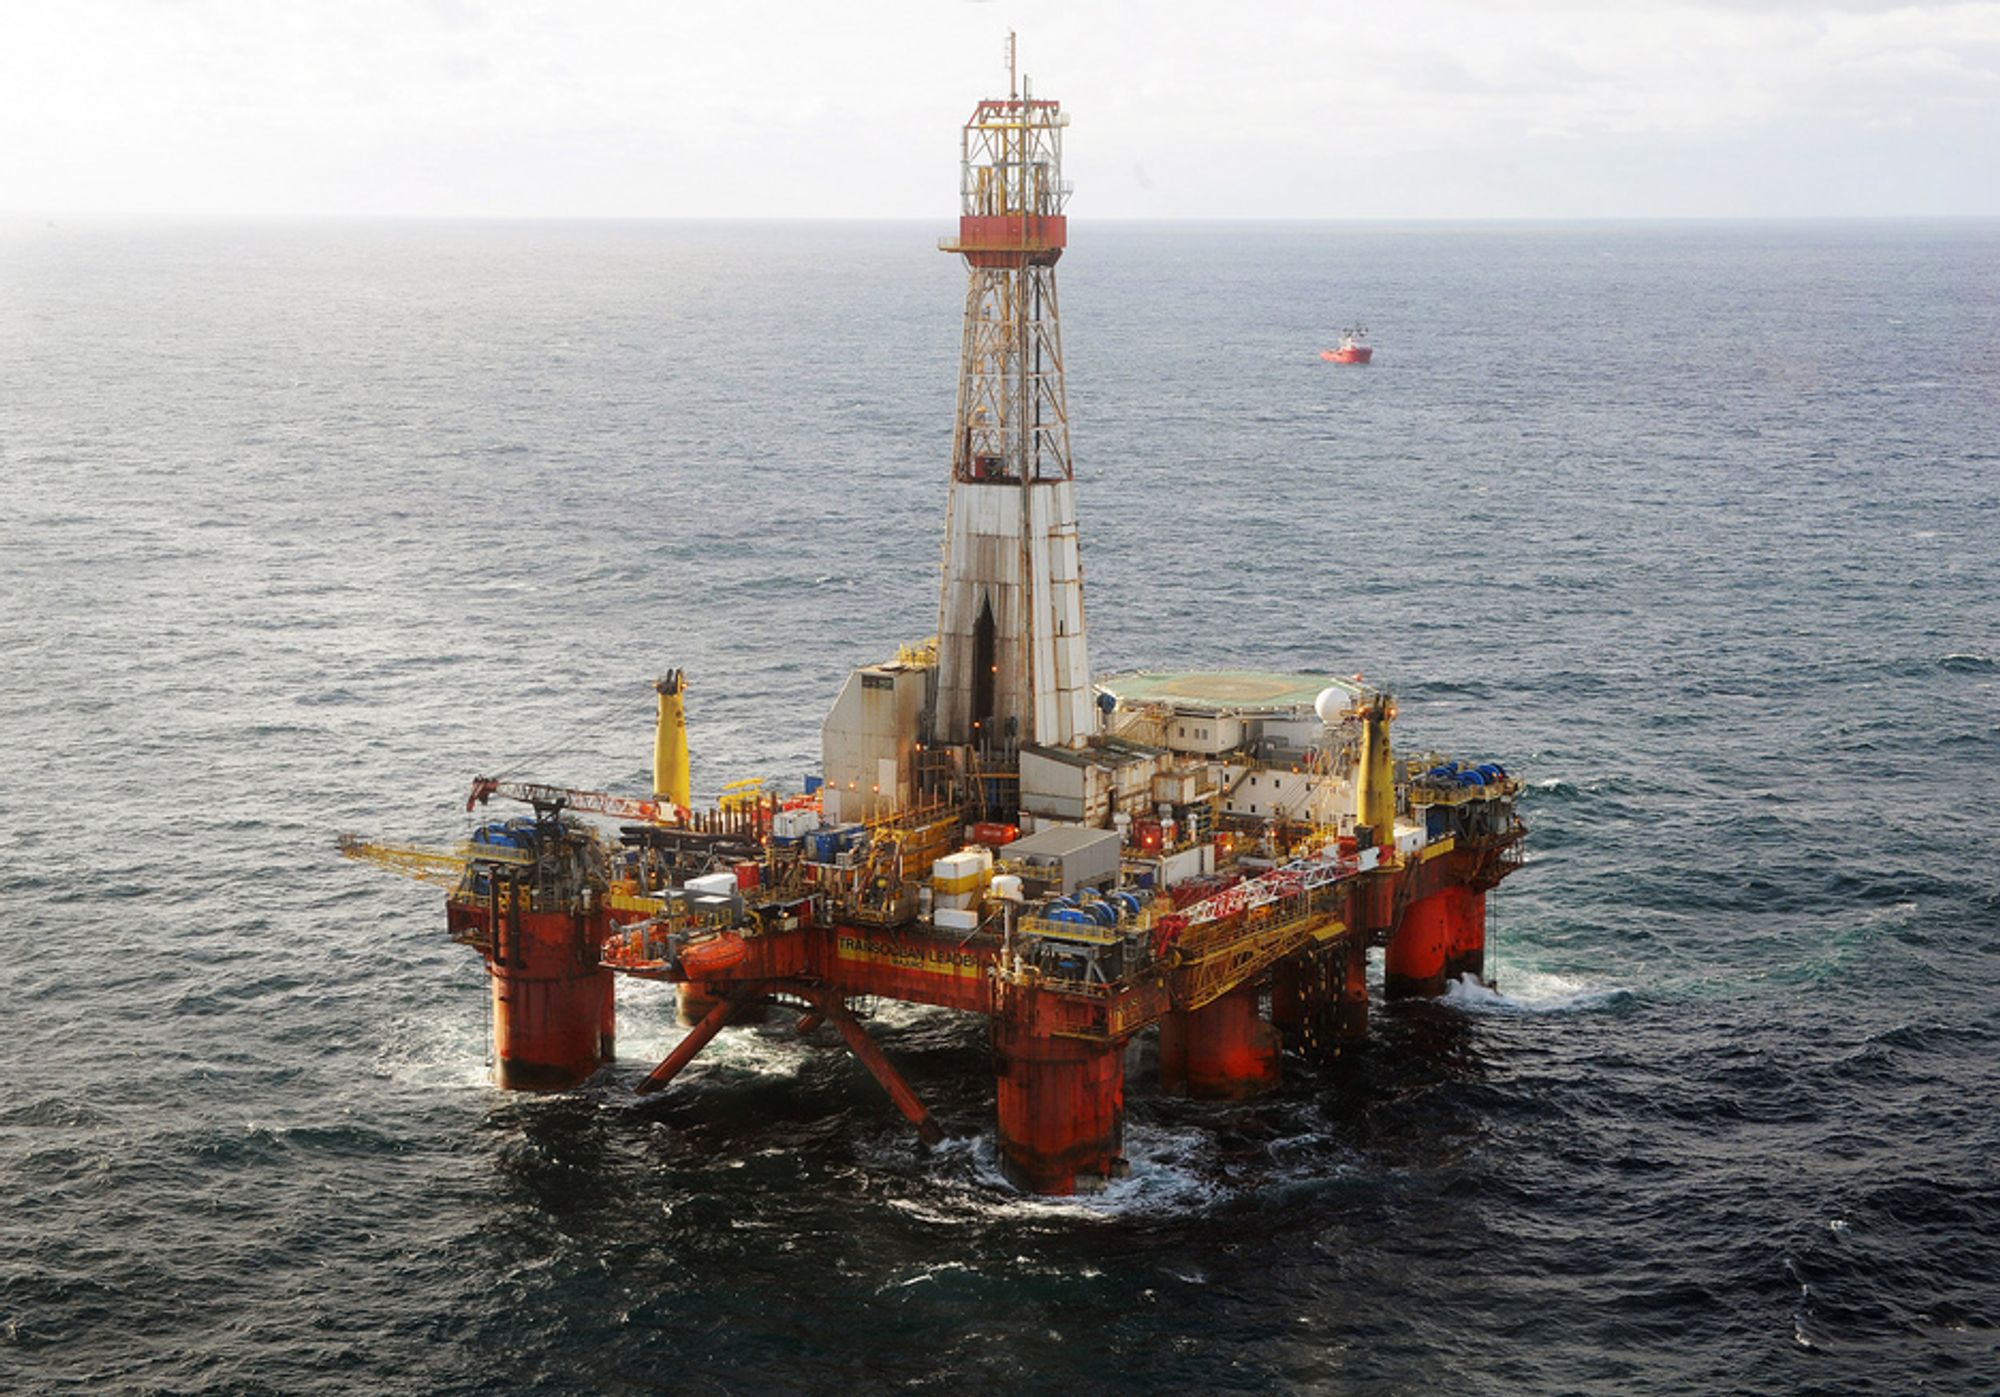 ENORME VERDIER: I dag doblet Statoil estimatene for Aldous-funnet i Nordsjøen til å være mellom 900 og 1500 millioner fat utvinnbare oljeekvivalenter.